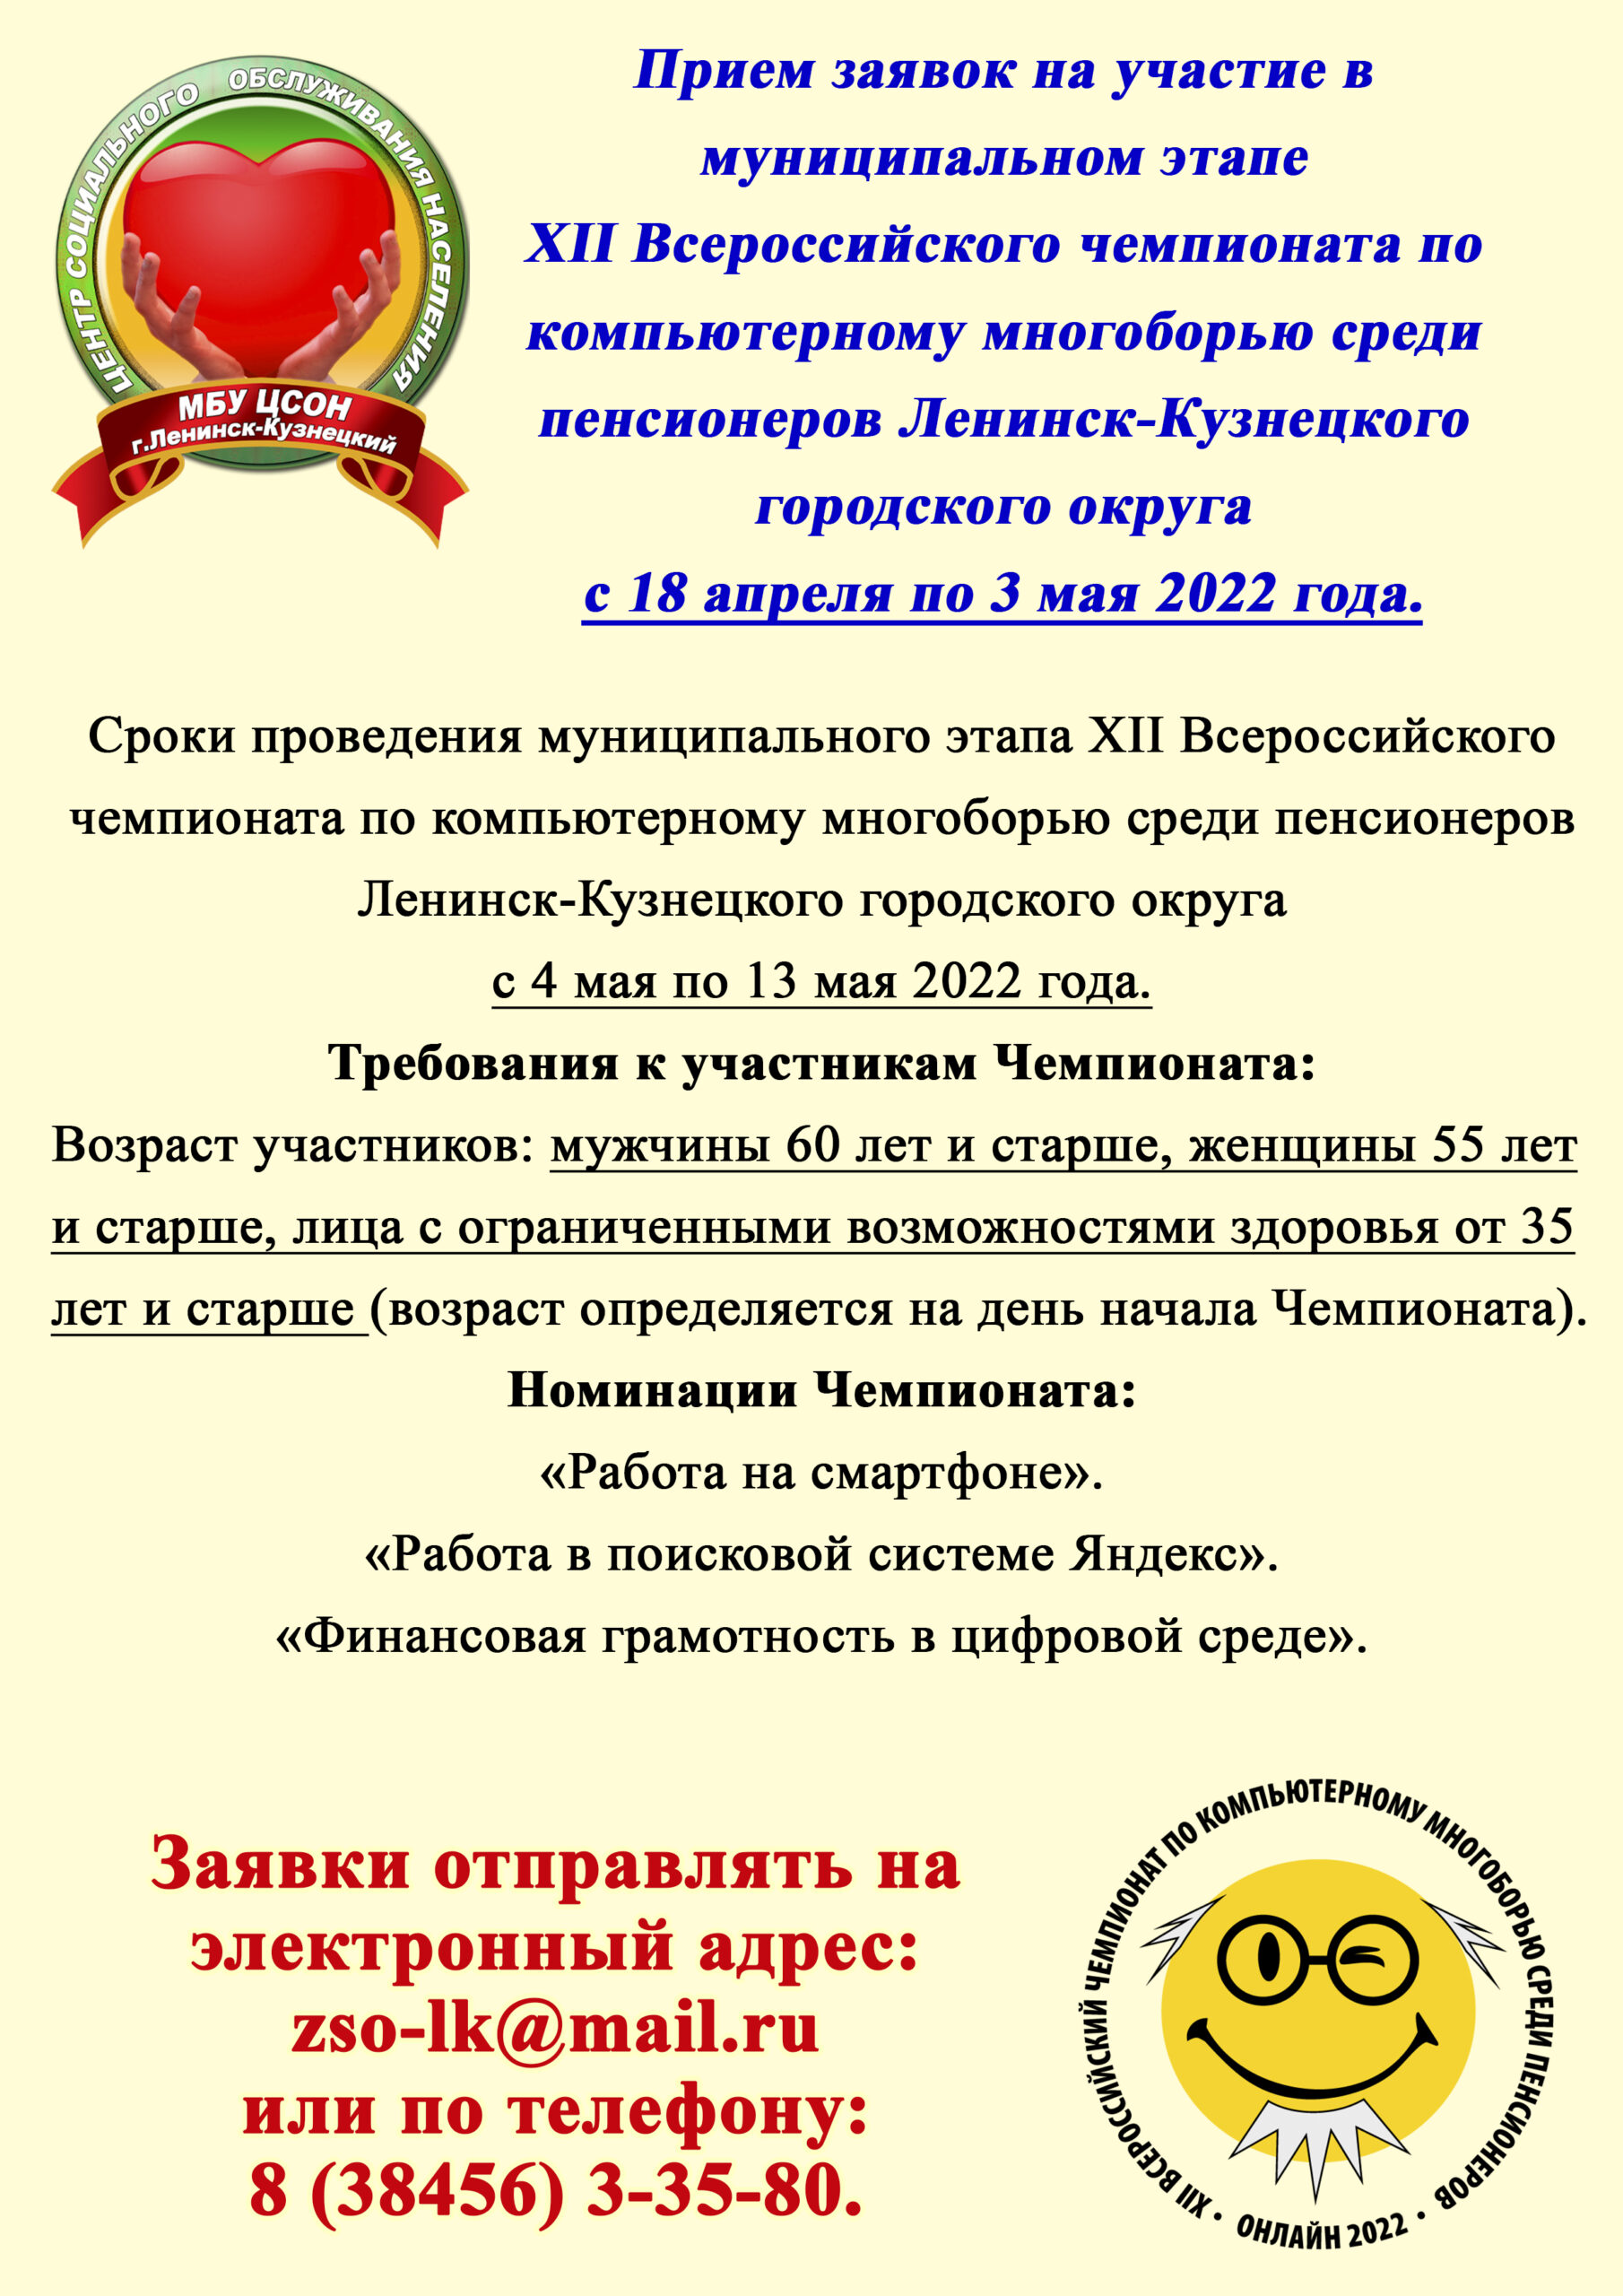 Прием заявок на участие в муниципальном этапе XII Всероссийского чемпионата по компьютерному многоборью среди пенсионеров Ленинск-Кузнецкого городского округа с 18 апреля по 3 мая 2022 года.